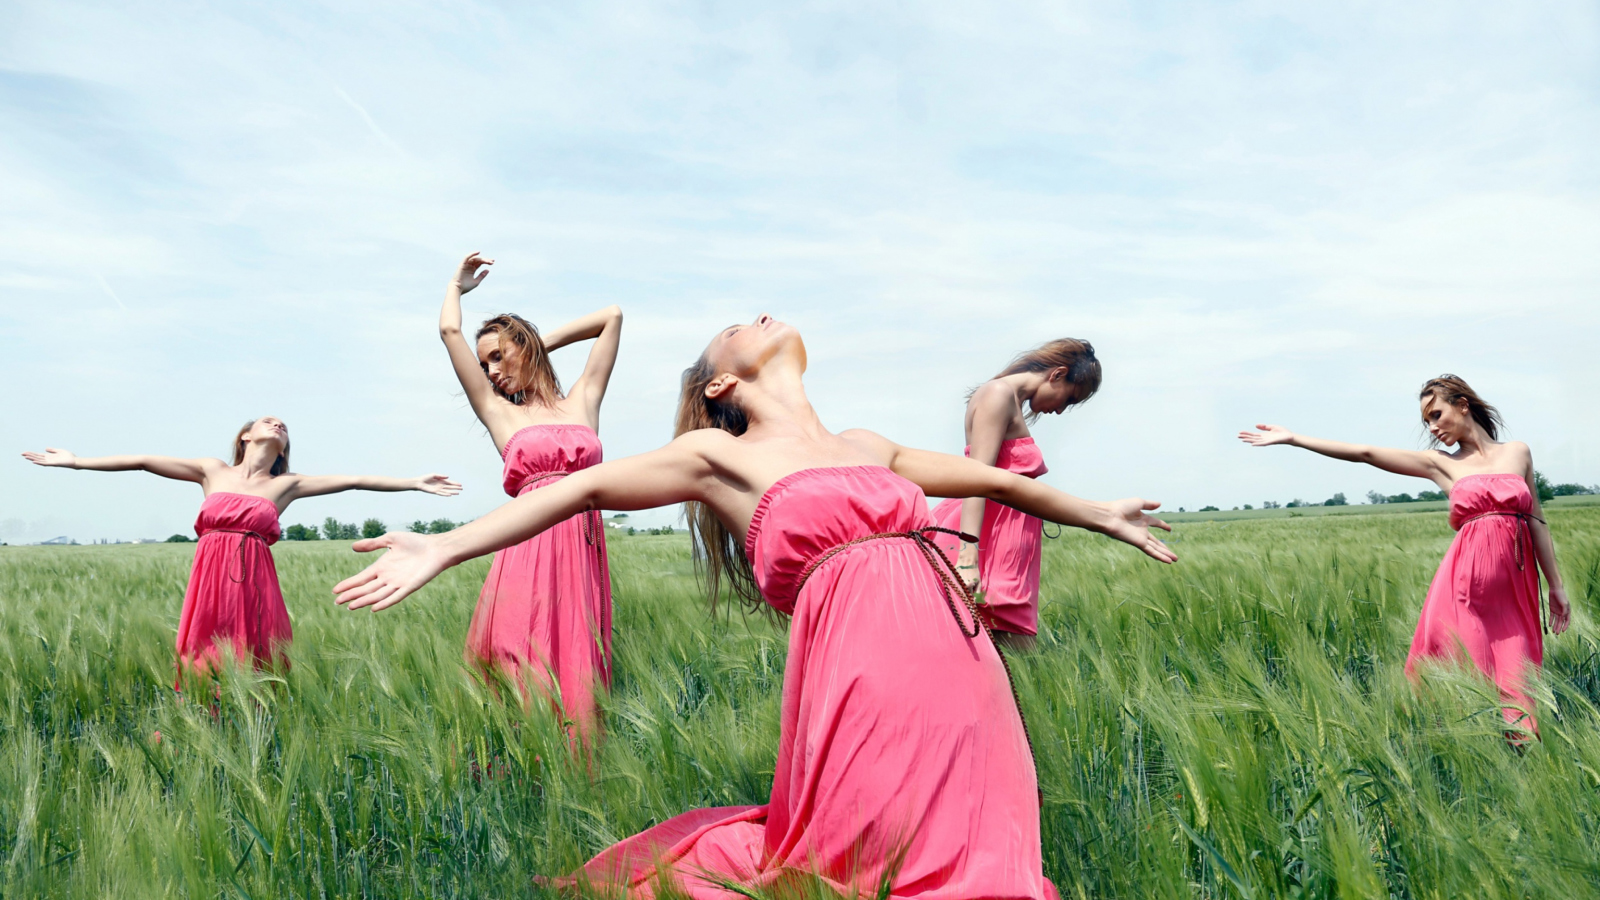 Girl In Pink Dress Dancing In Green Fields wallpaper 1600x900